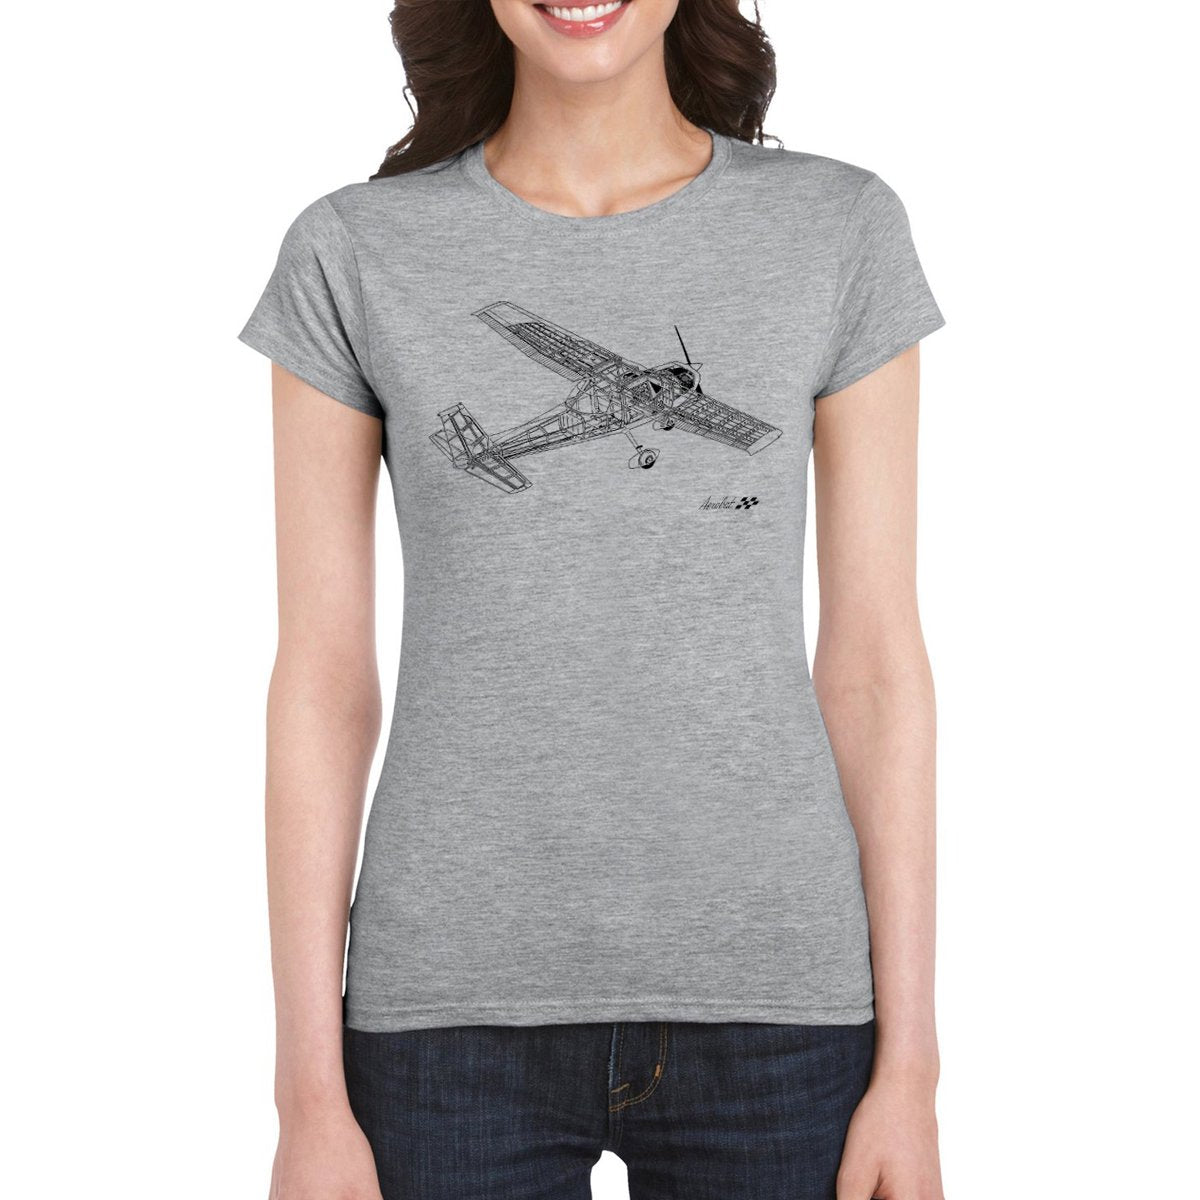 AEROBAT CUTAWAY Women's Semi-Fitted T-Shirt